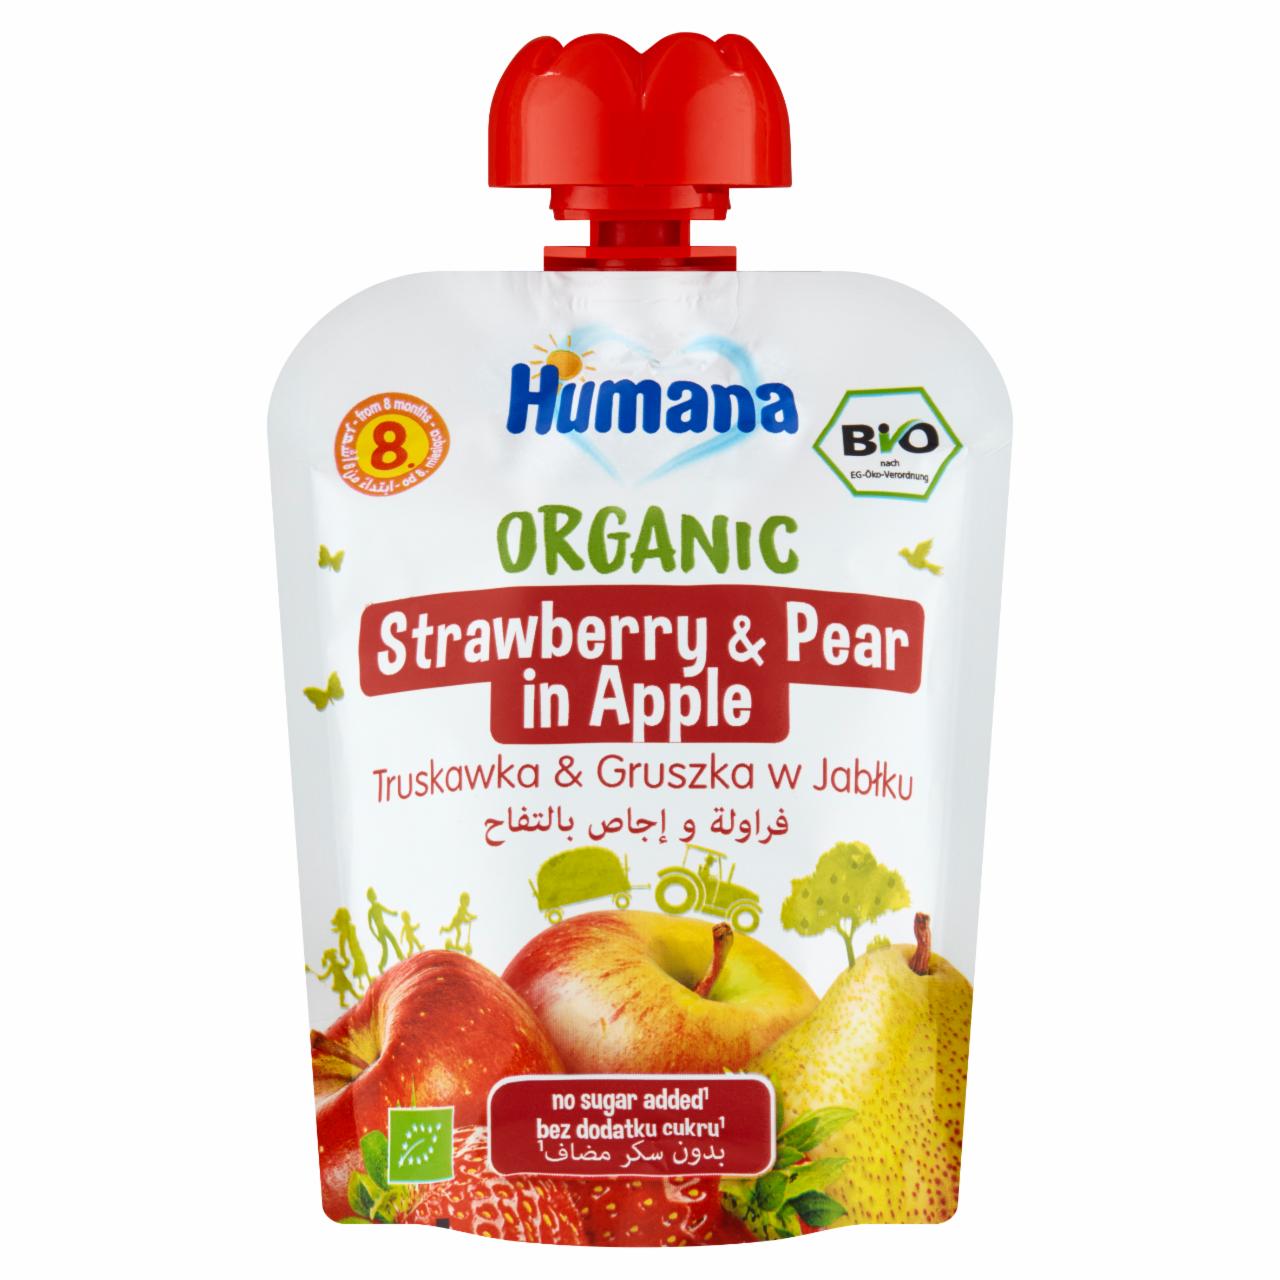 Zdjęcia - Humana Organic Mus truskawka & gruszka w jabłku po 8. miesiącu 90 g